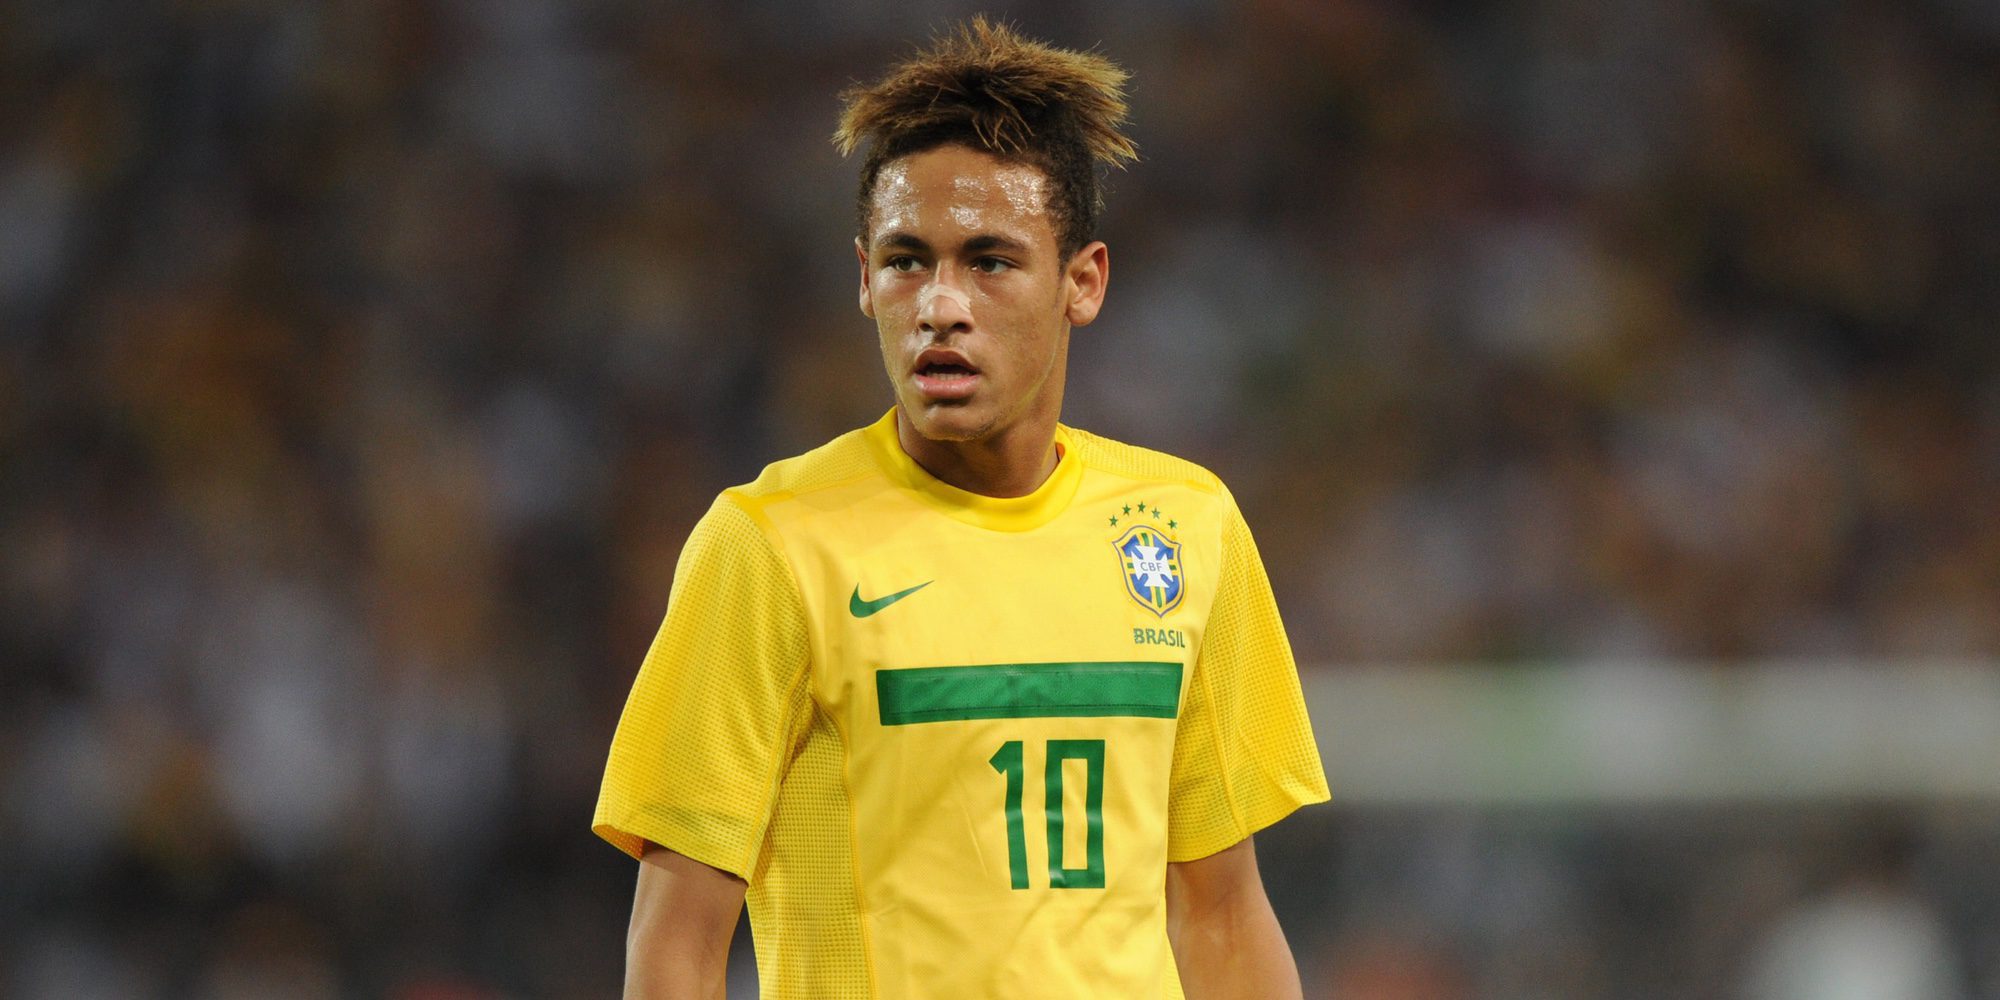 Las 25 cosas que tienes que saber del futbolista del Barça Neymar